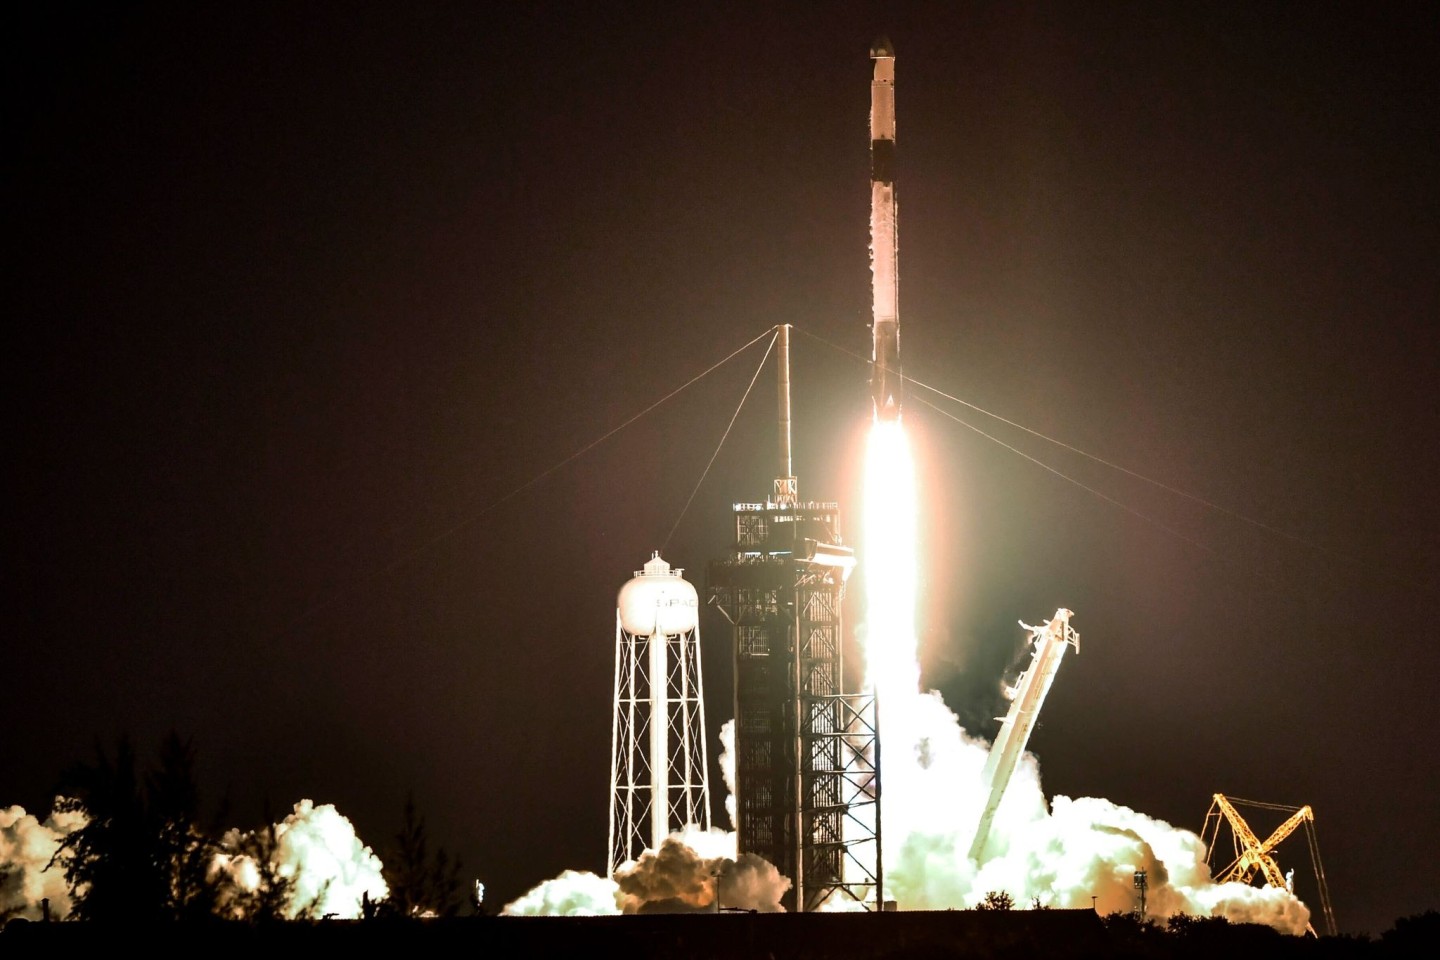 Eine SpaceX Falcon 9-Rakete hebt vom Kennedy Space Center in Florida ab. Die Dragon-Kapsel befindet sich an der Spitze der Rakete.